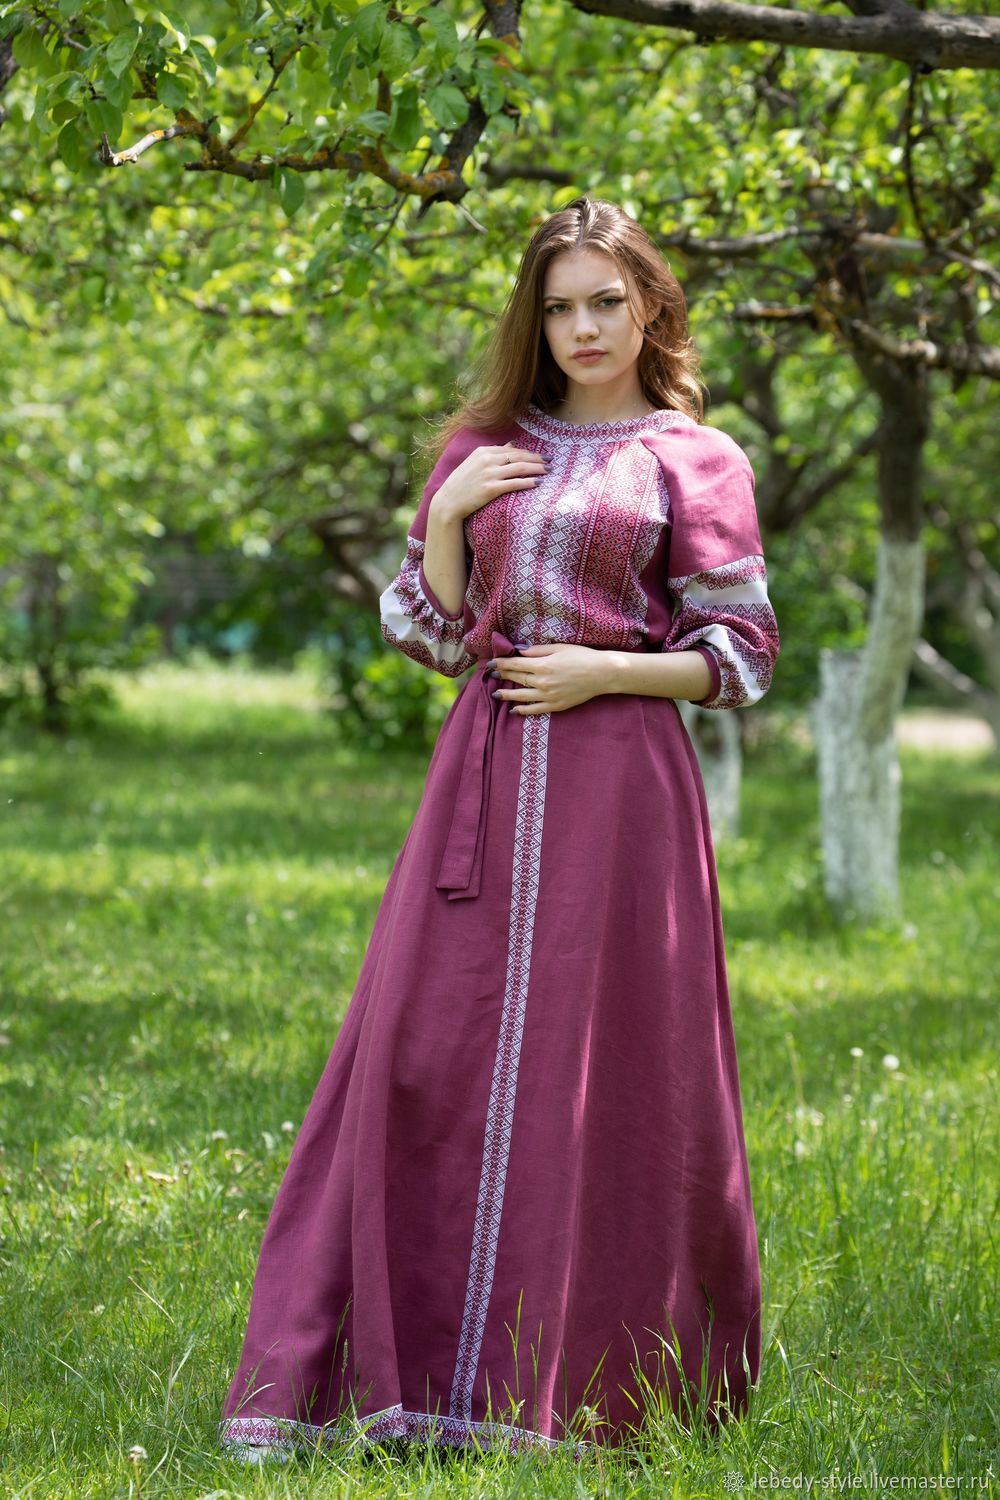 Старорусская одежда